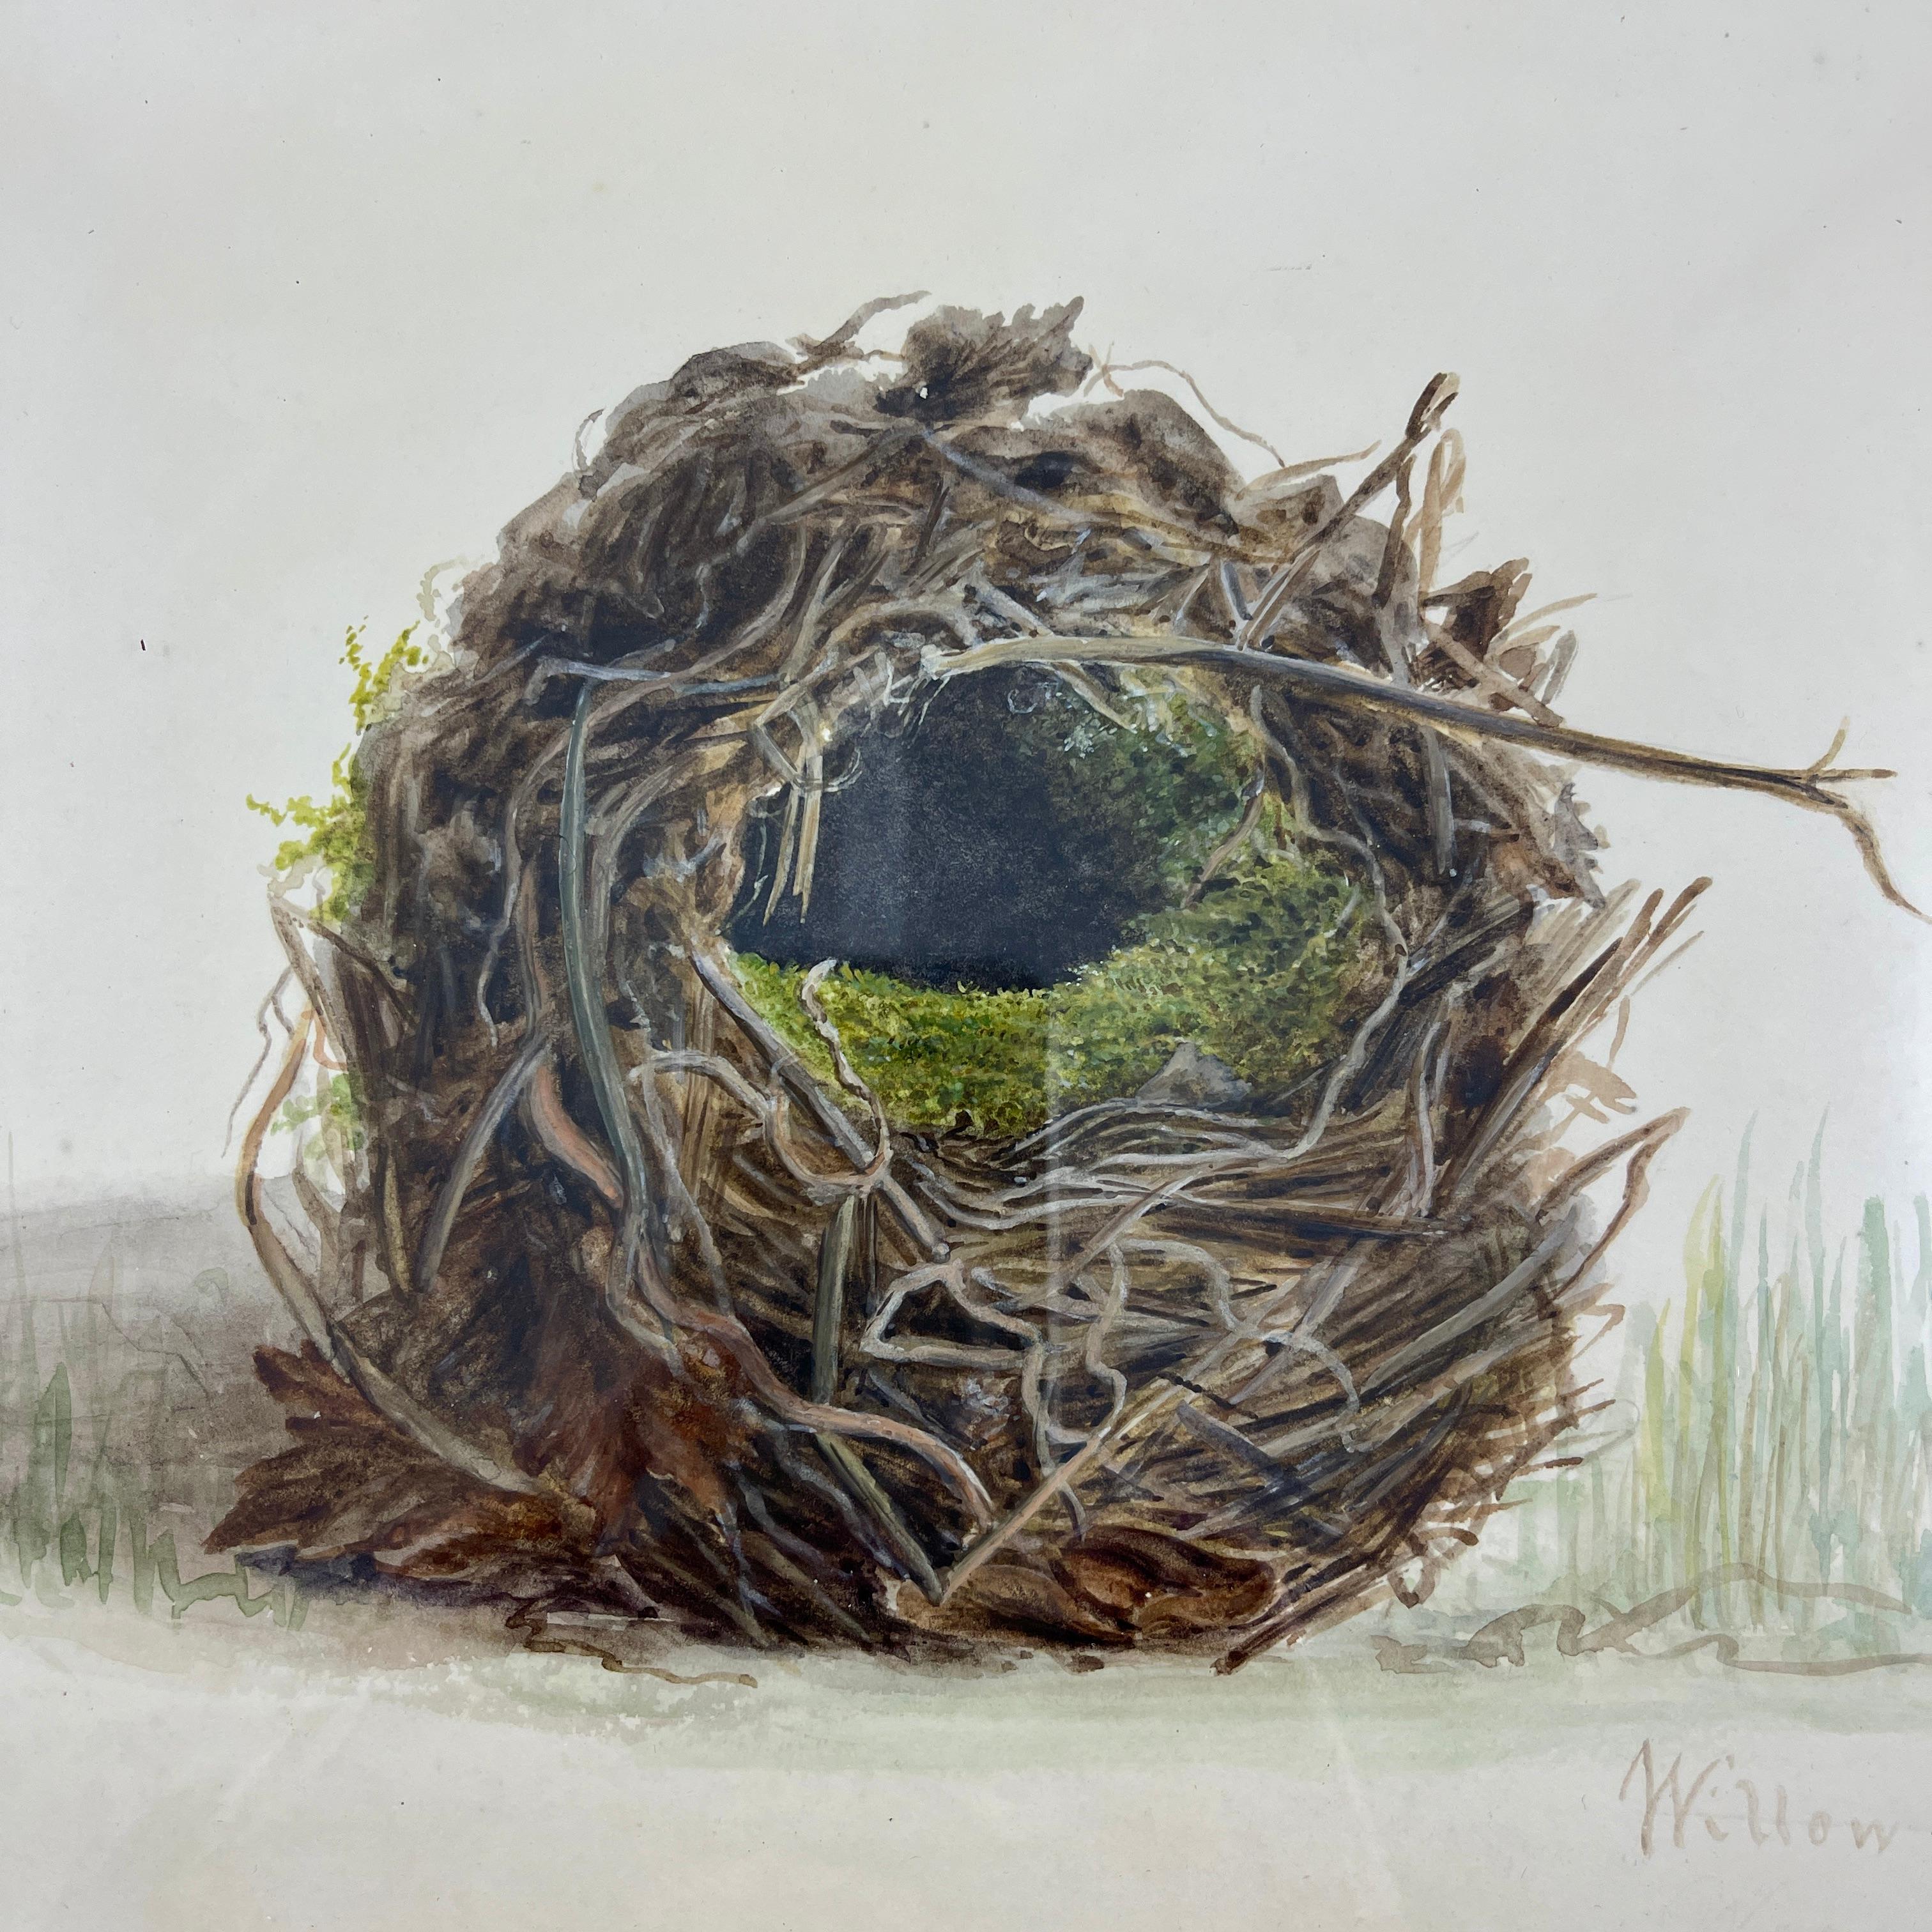 Une aquarelle originale de l'école britannique de la période Regency représentant un nid et un œuf de troglodyte, montée dans un cadre en bois fruitier de la période géorgienne - datée de 1863.

Ces aquarelles ont été réalisées en grande partie